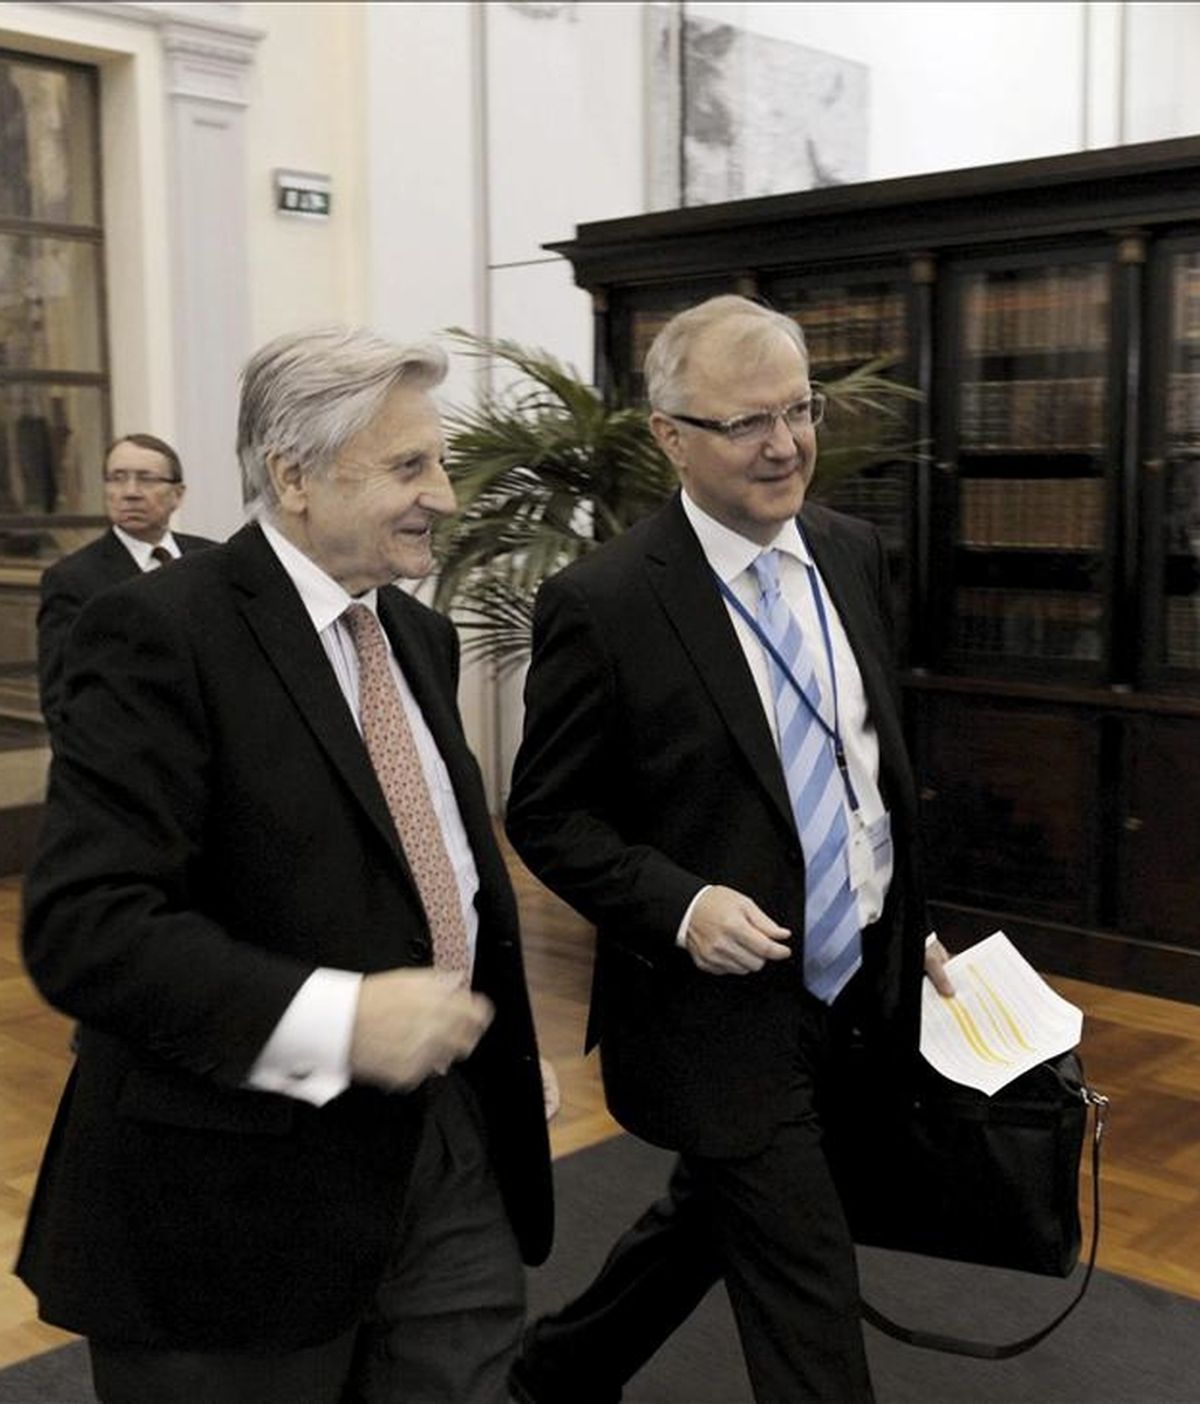 El presidente del Banco Central Europeo, Jean-Claude Trichet (izq), conversa con el comisario europeo de Asuntos Económicos y Monetarios, Olli Rehn (dcha), a su llegada a la reunión de los miembros del consejo directivo del Banco Central Europeo celebrada en Helsinki (Finlandia). EFE